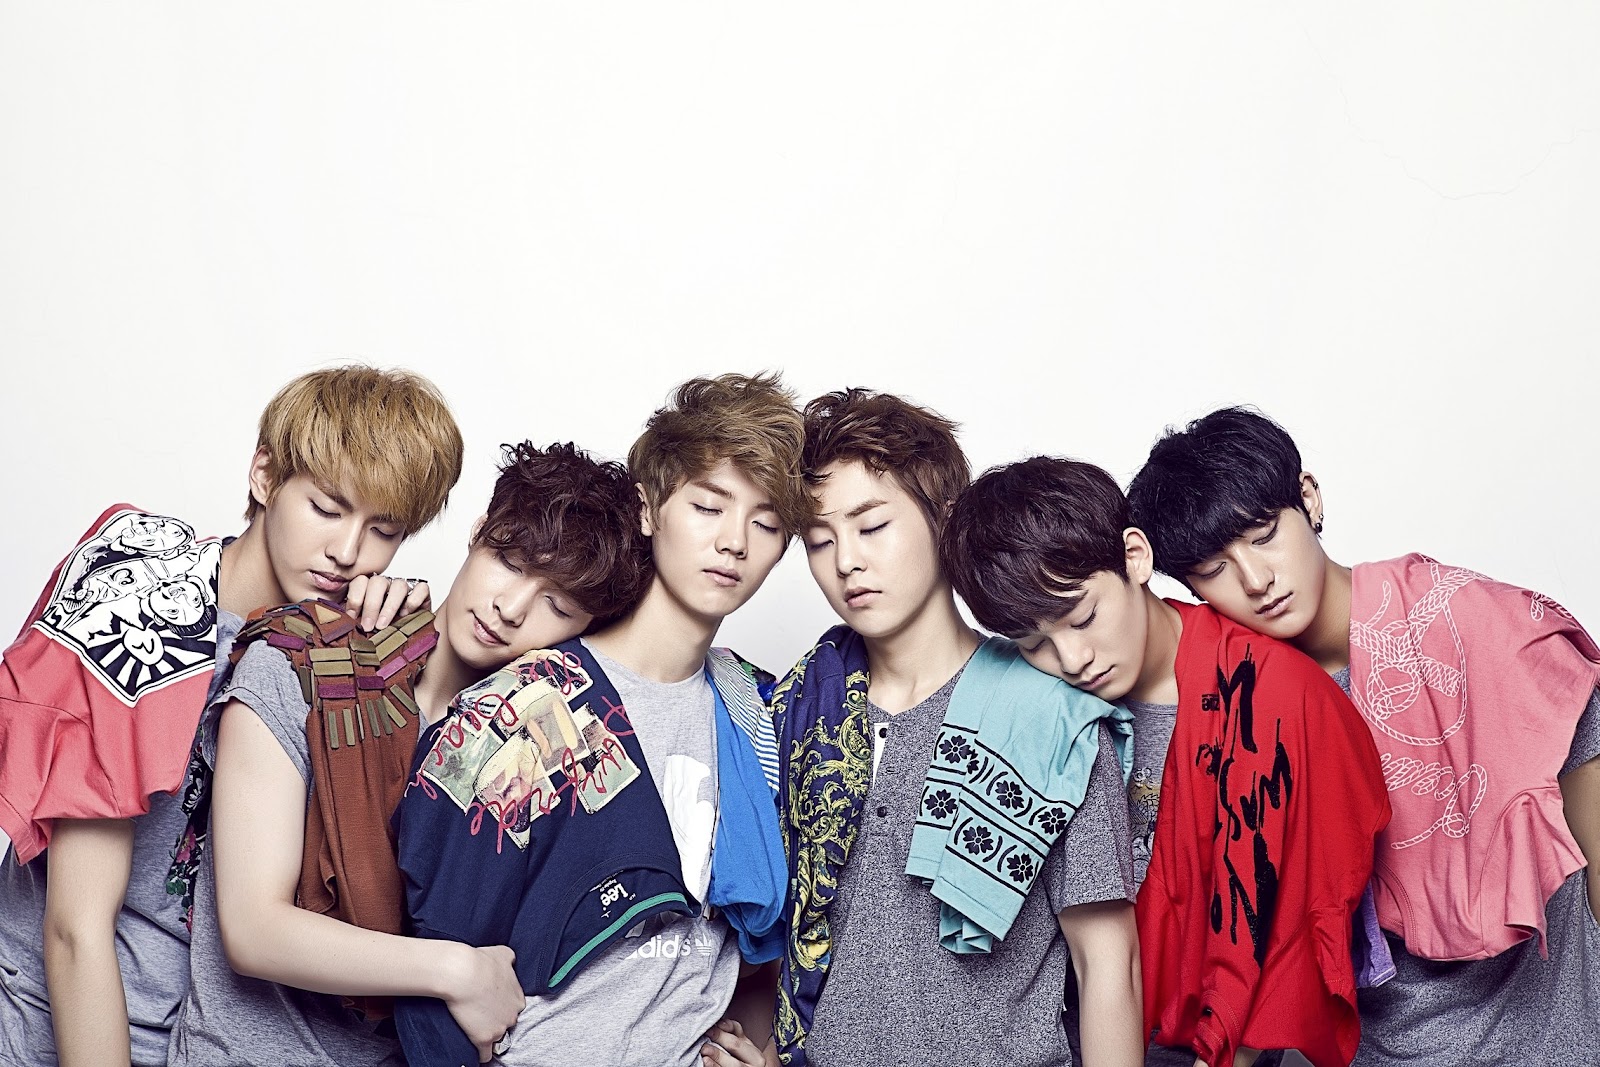 Sleepy EXO by SM entertainment